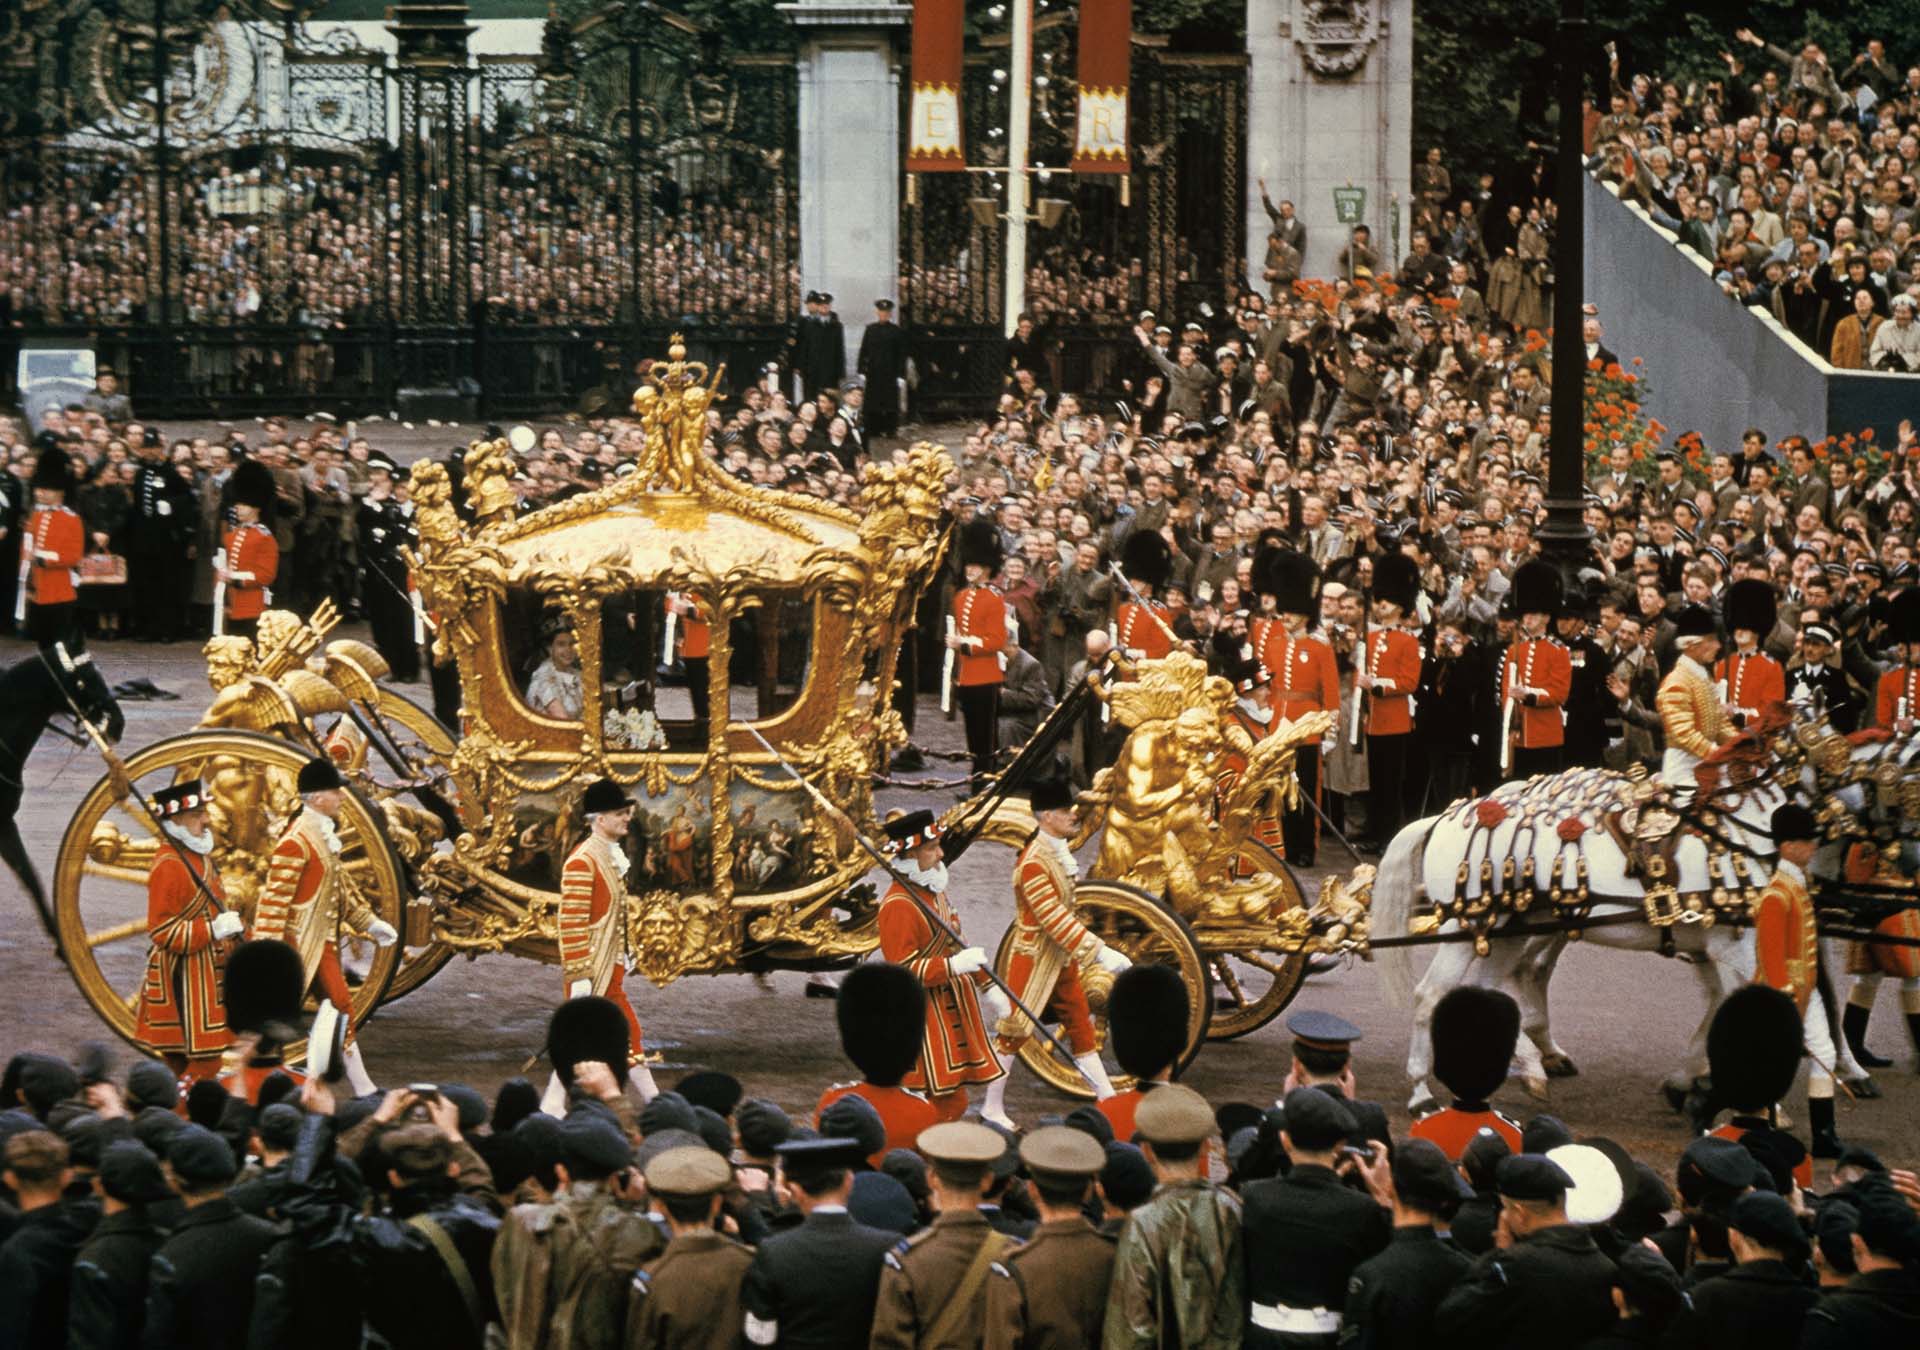 Isabel II llegó a la abadía de Westminster en la Carroza de oro, con la que también recorrería, después de su coronación, las calles de Londres